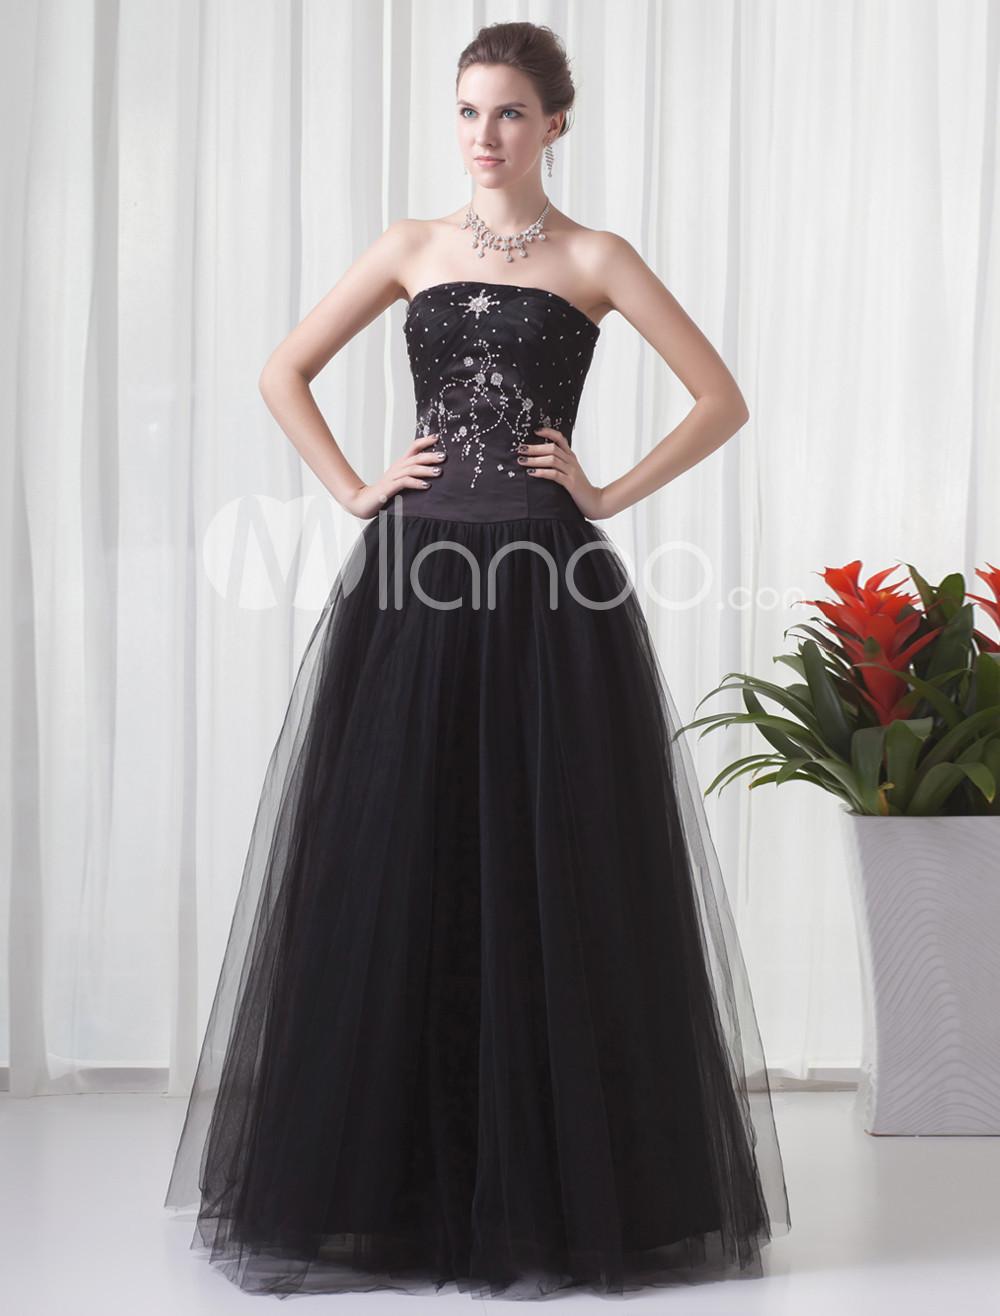 Foto Bola vestido de fiesta vestido rebordear neto negro sin tirantes piso de longitud femenina foto 303885